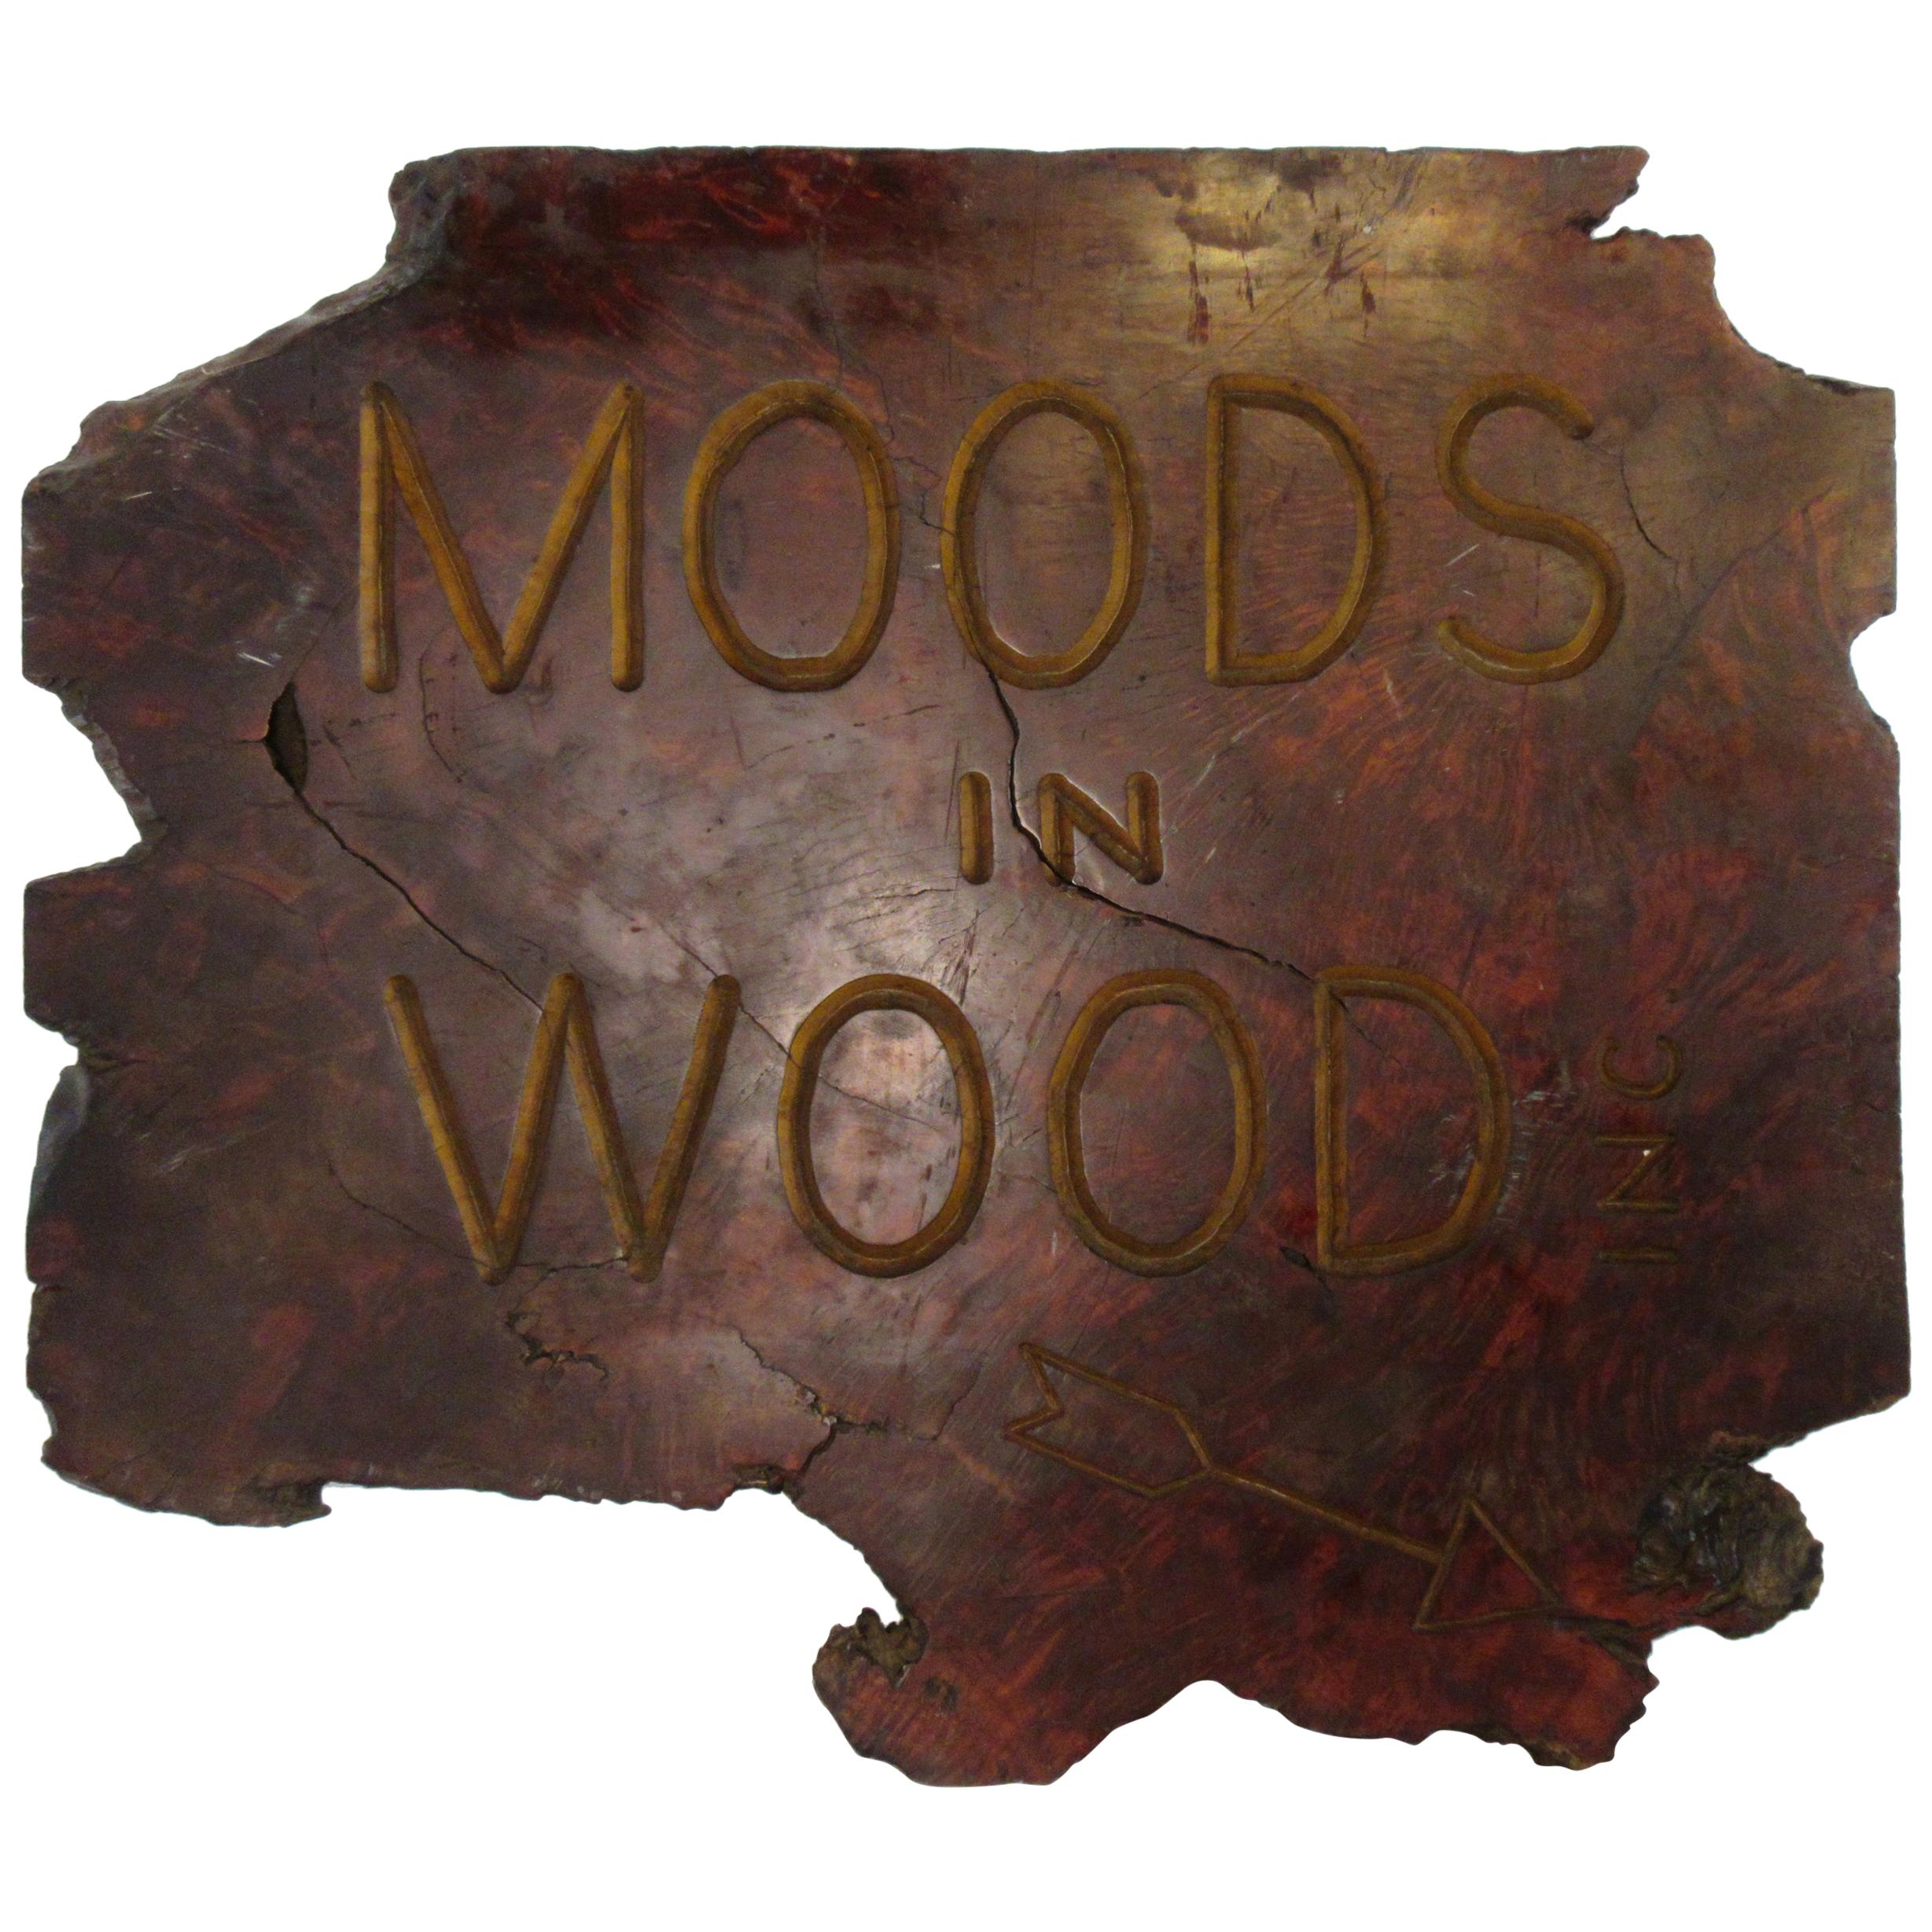 1970er Jahre Moods In Wood-Schild